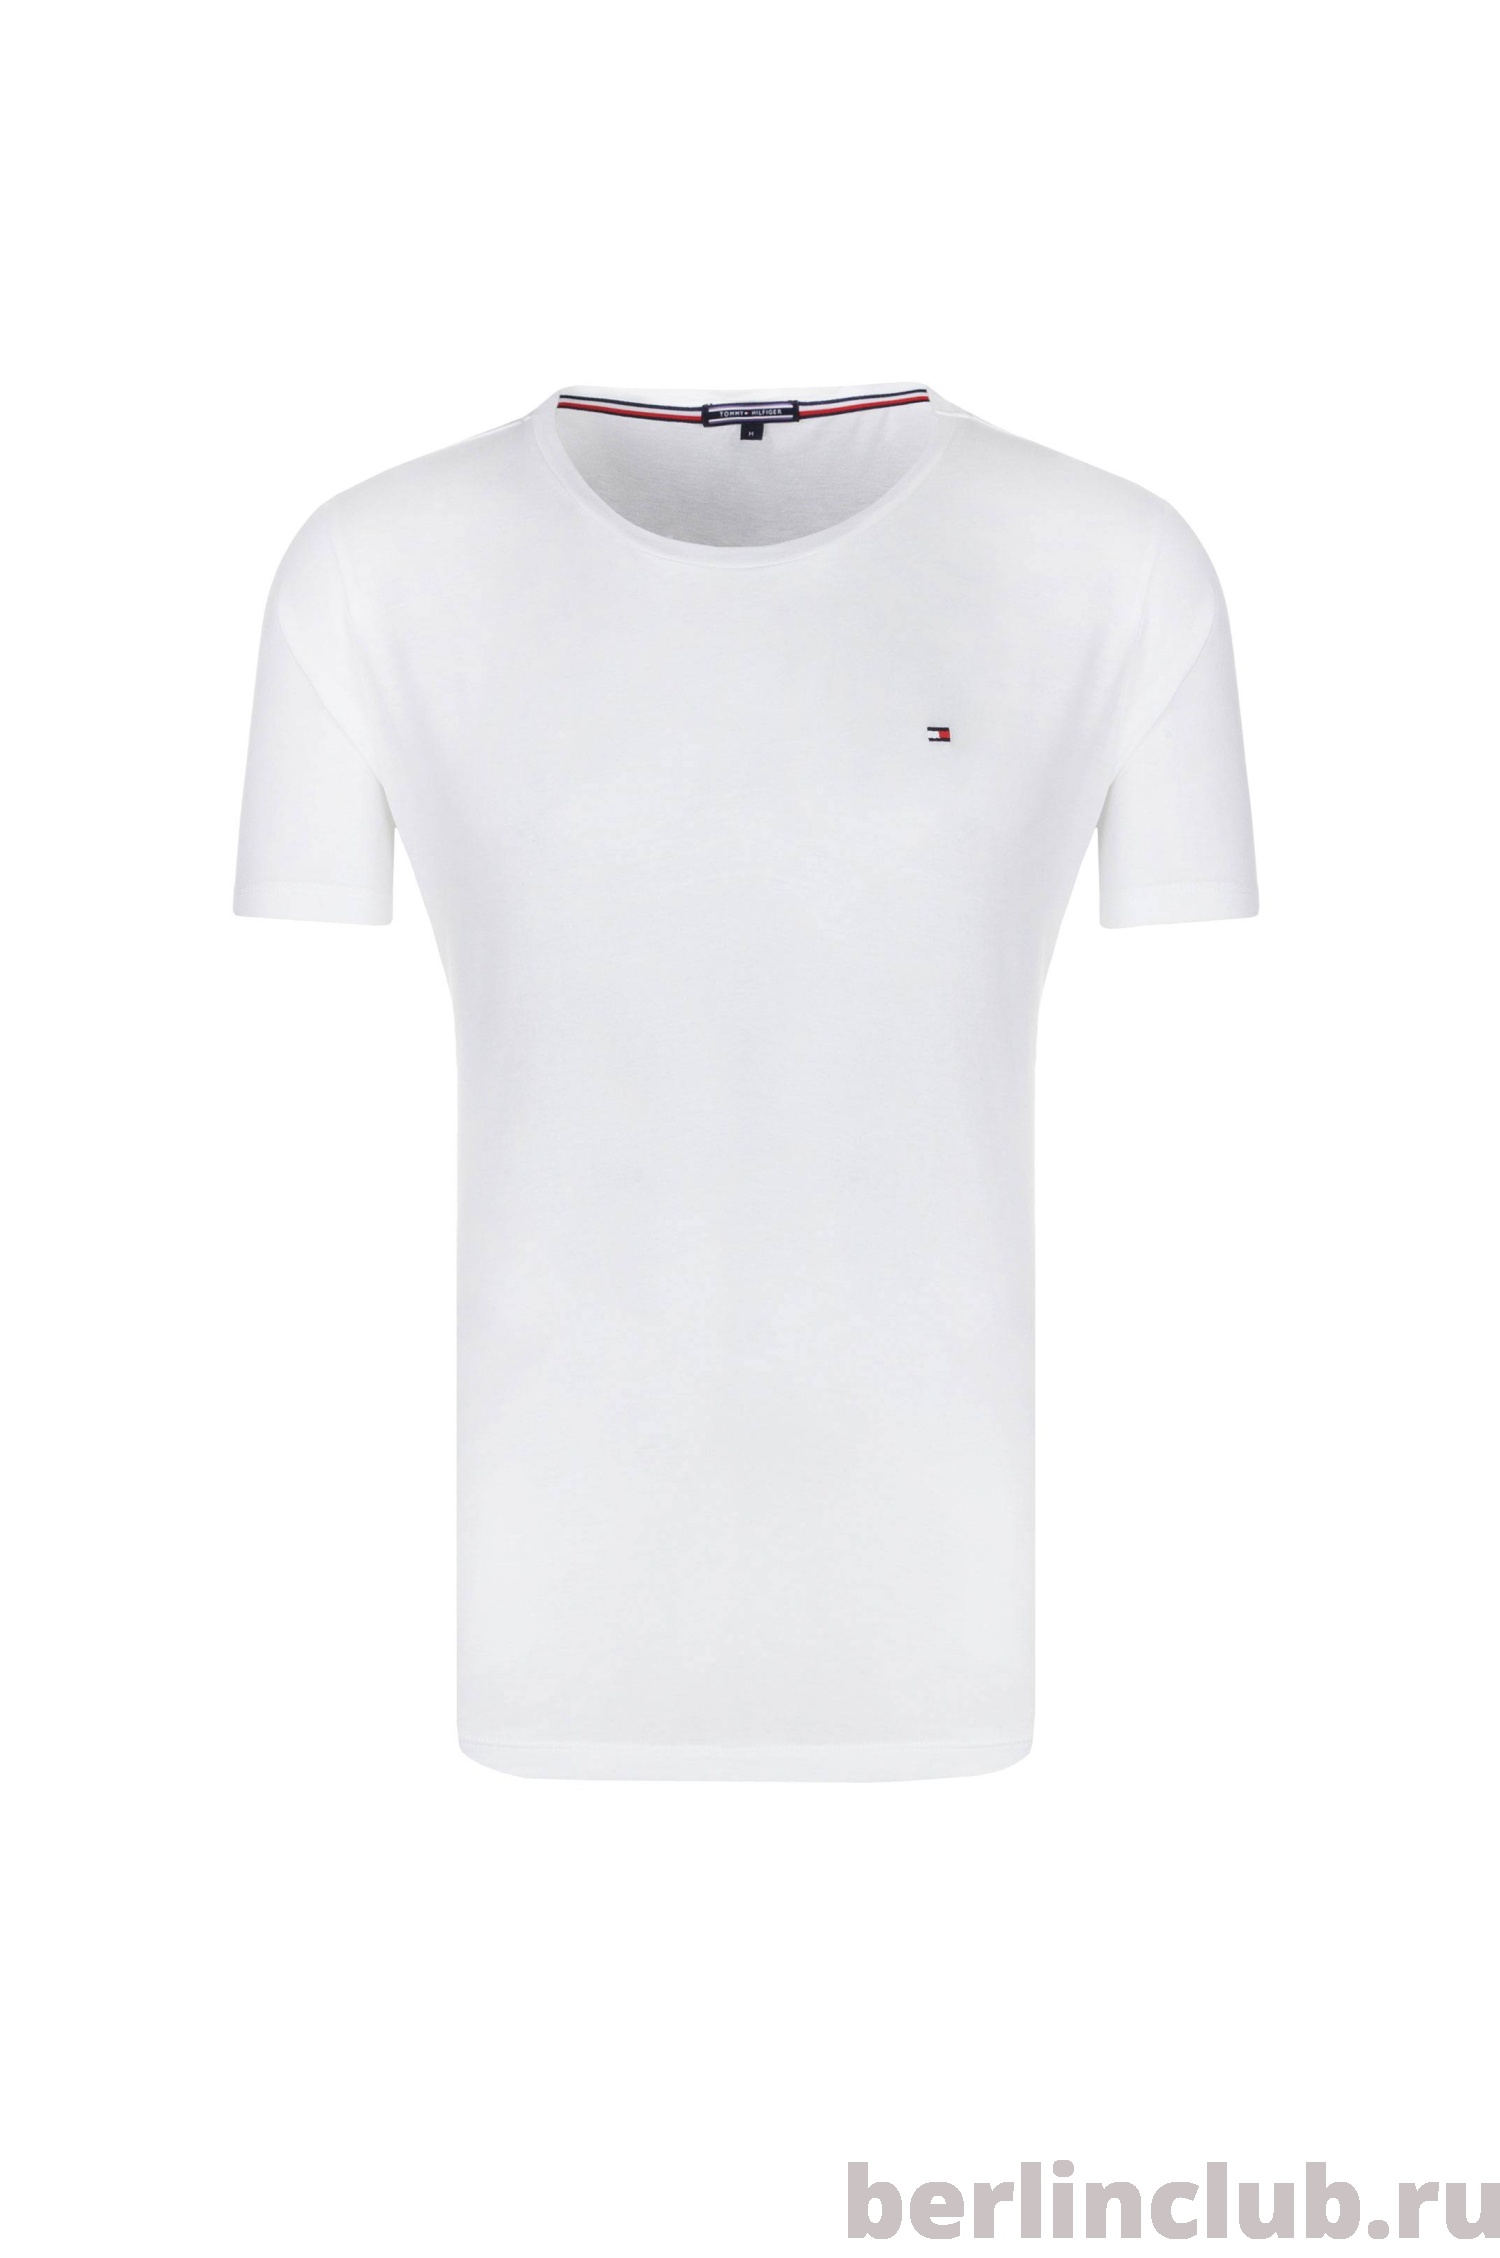 Мужская футболка Tommy Hilfiger  - белая - купить с доставкой по России, оплата при получении